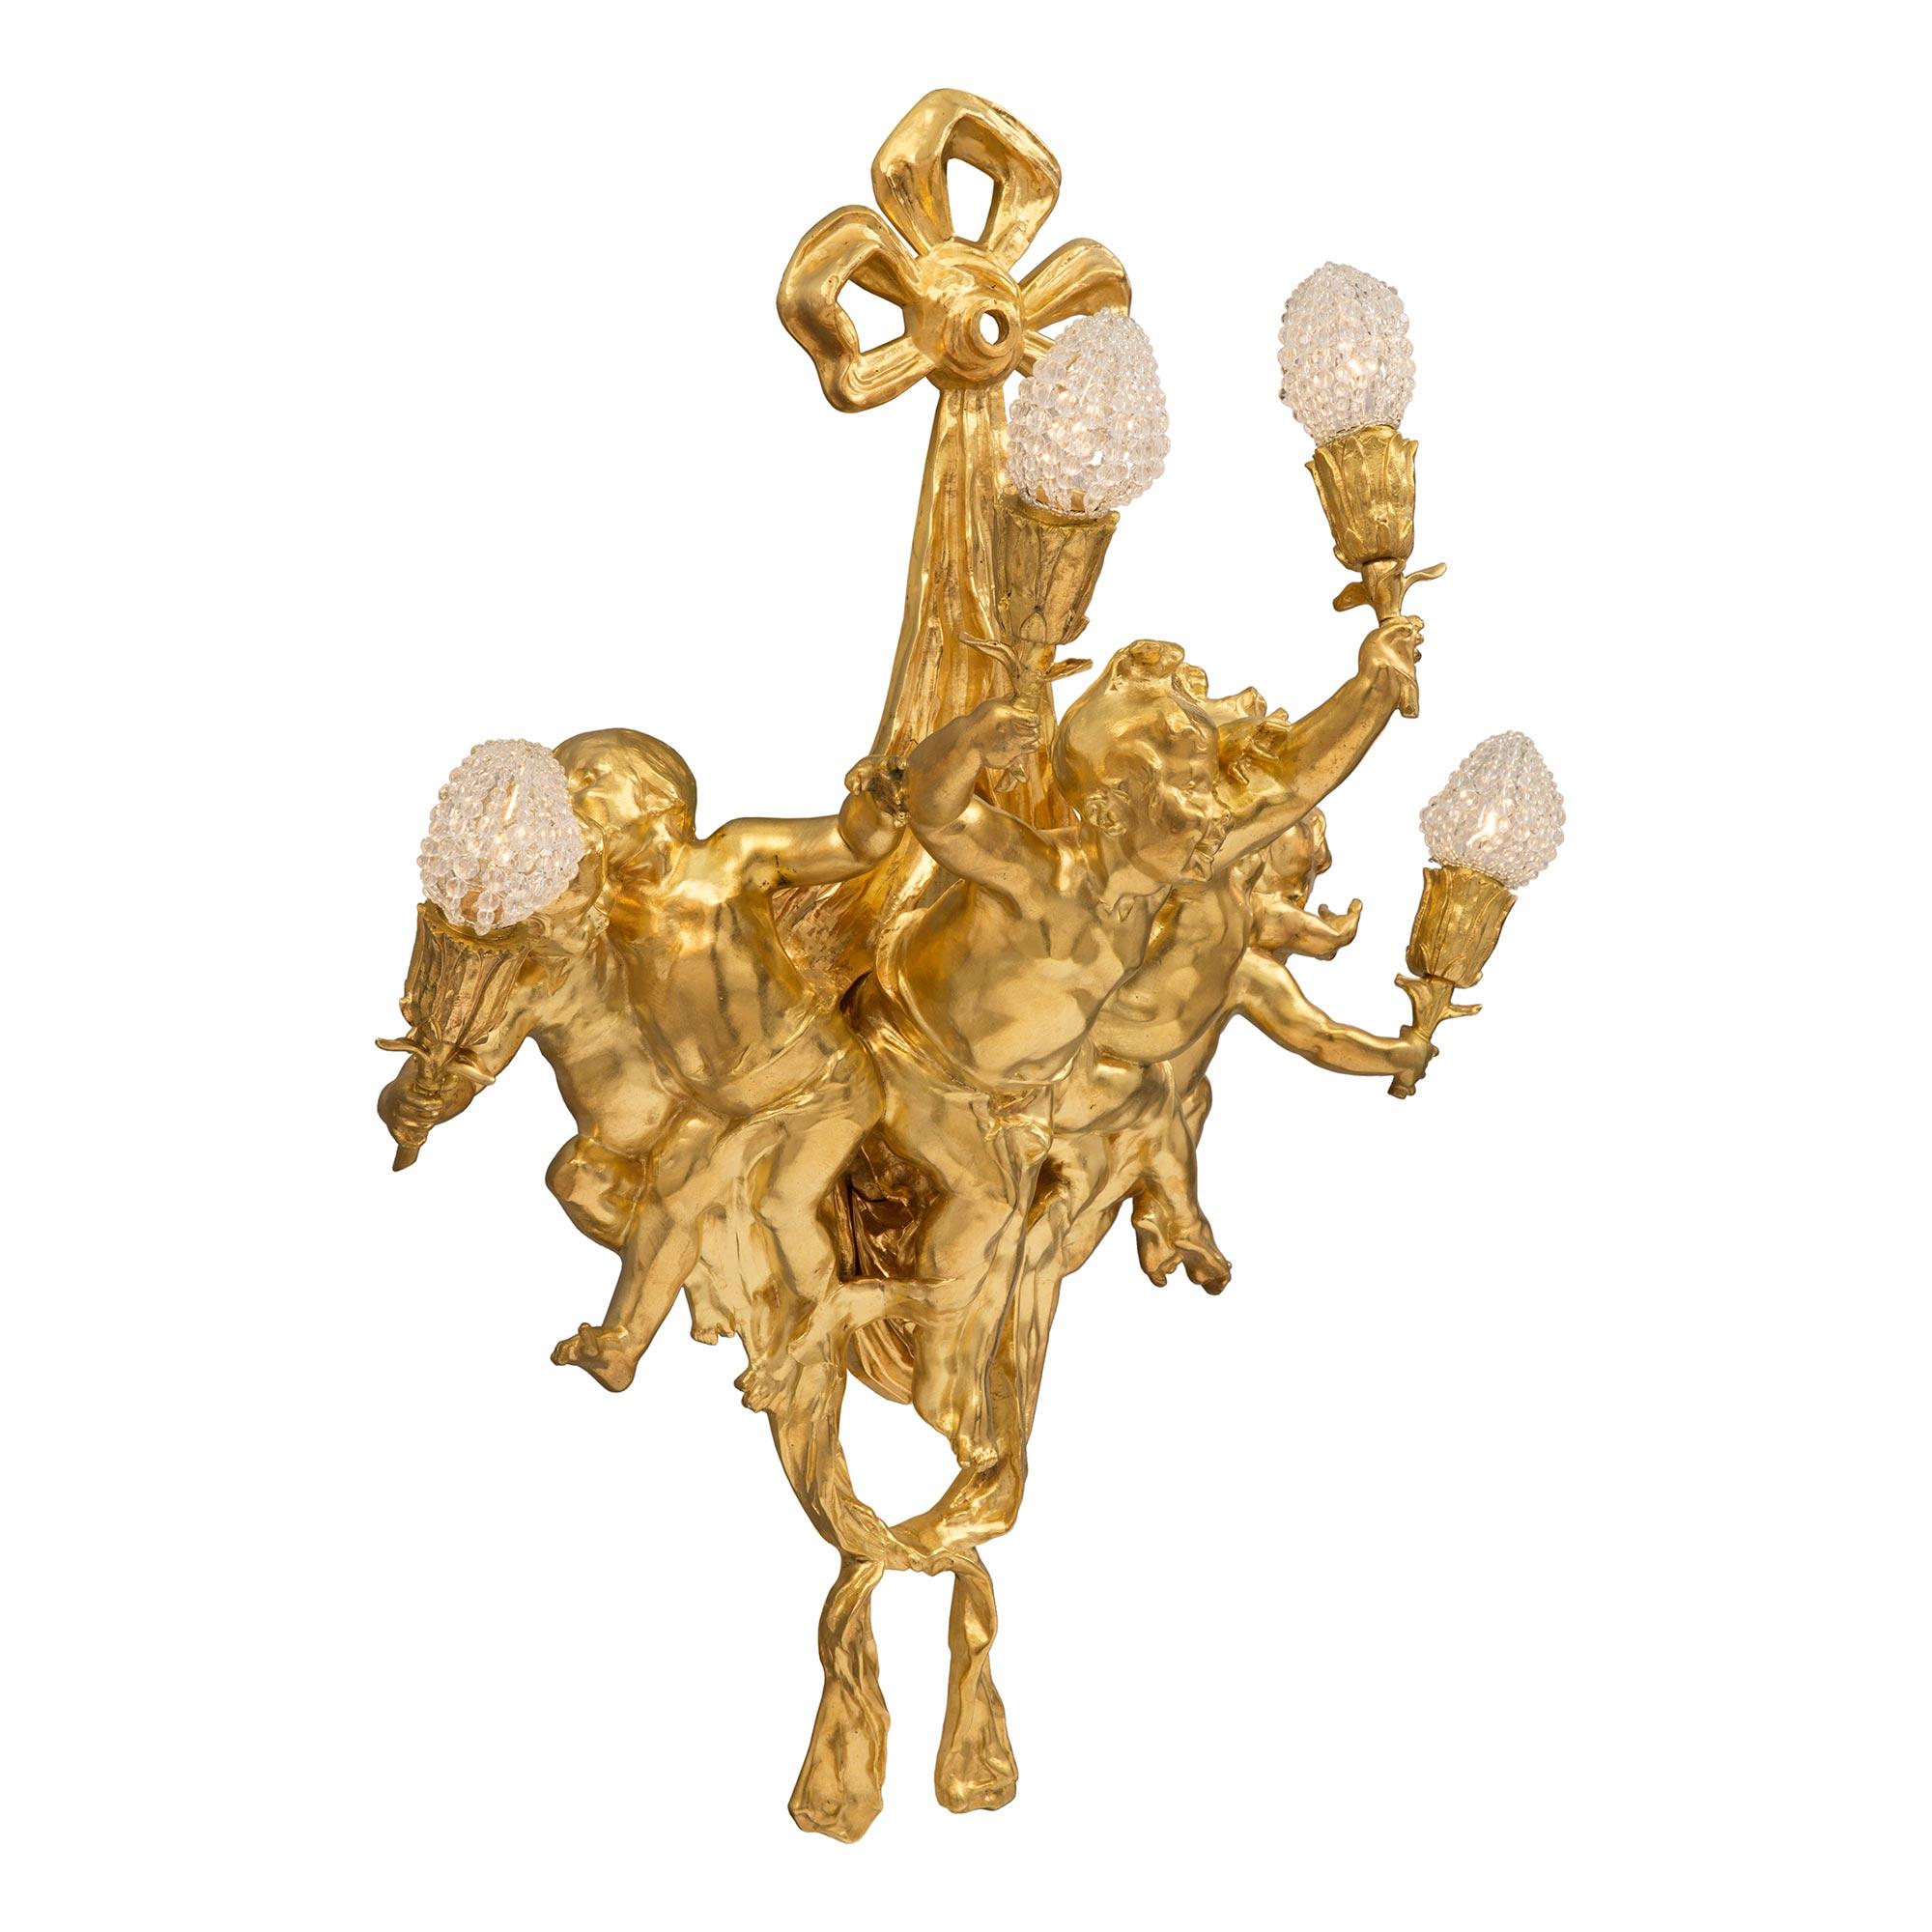 Superbe applique à quatre bras en bronze doré, de style Louis XVI et d'époque Belle Époque, datant du XIXe siècle. L'applique est centrée par un joli tissu de swaging noué en bas. Au centre, cinq charmants chérubins richement ciselés dansent et